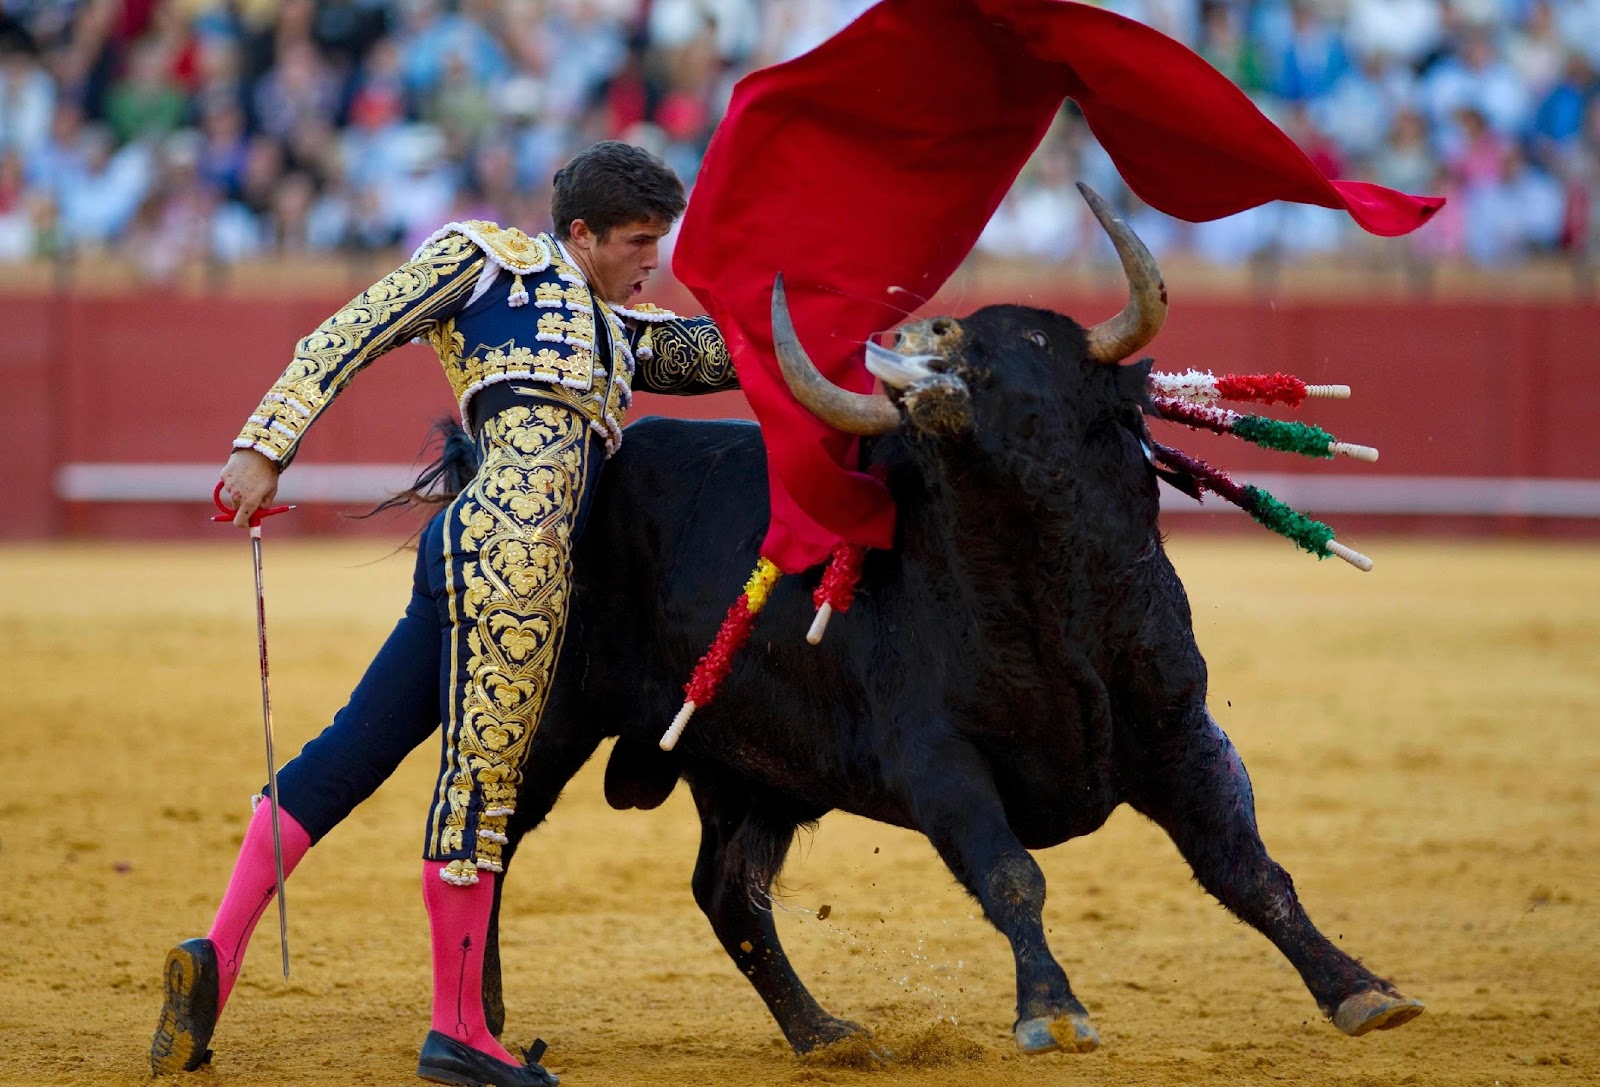 C:\Users\rwil313\Desktop\Bullfighting picture.jpg